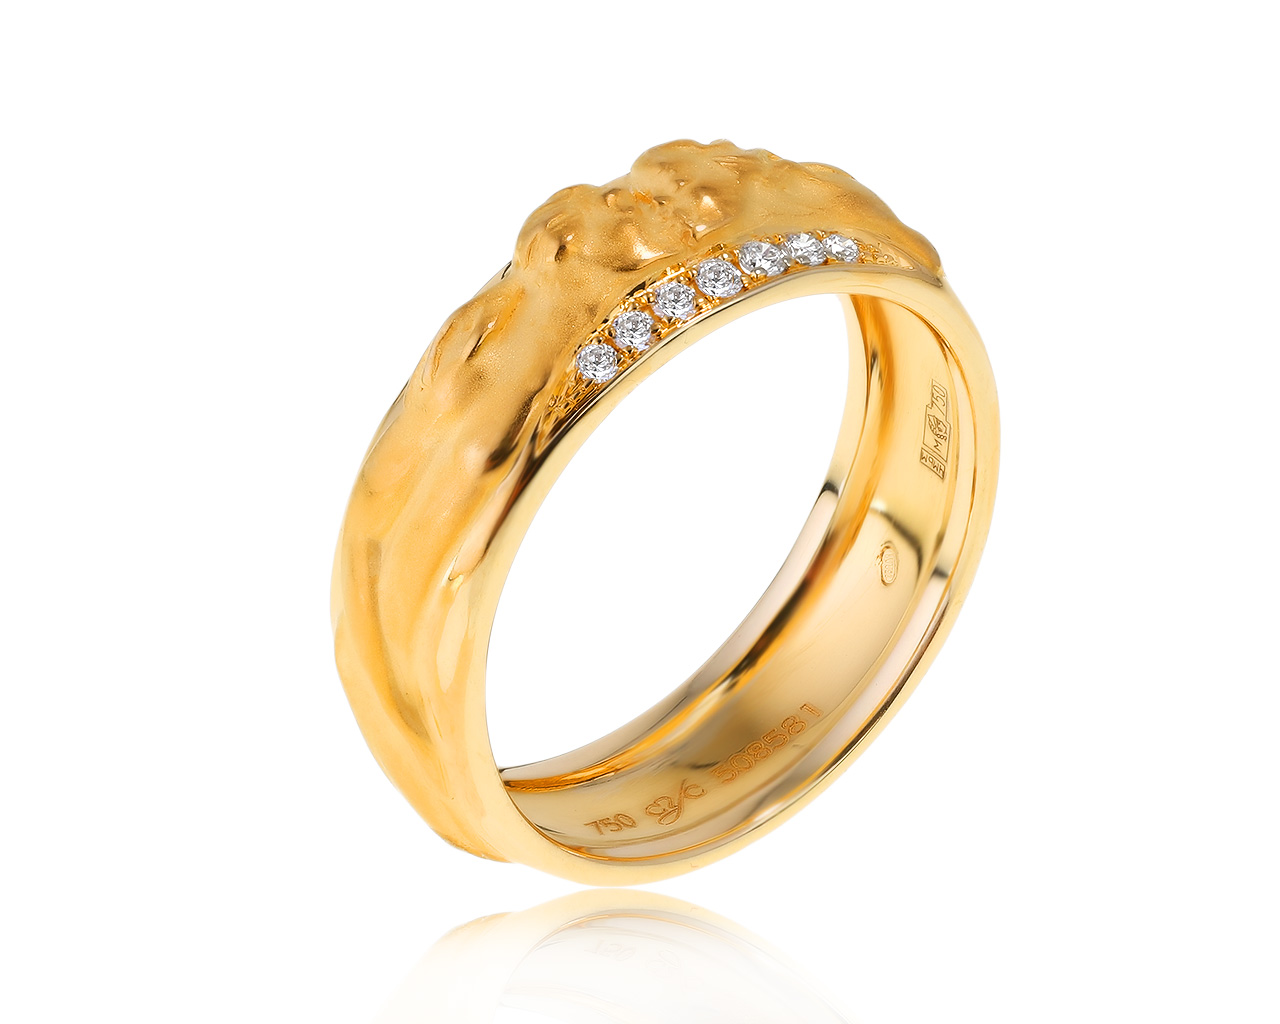 Оригинальное золотое кольцо с бриллиантами 0.08ct Carrera y Carrera Promesa 300321/7